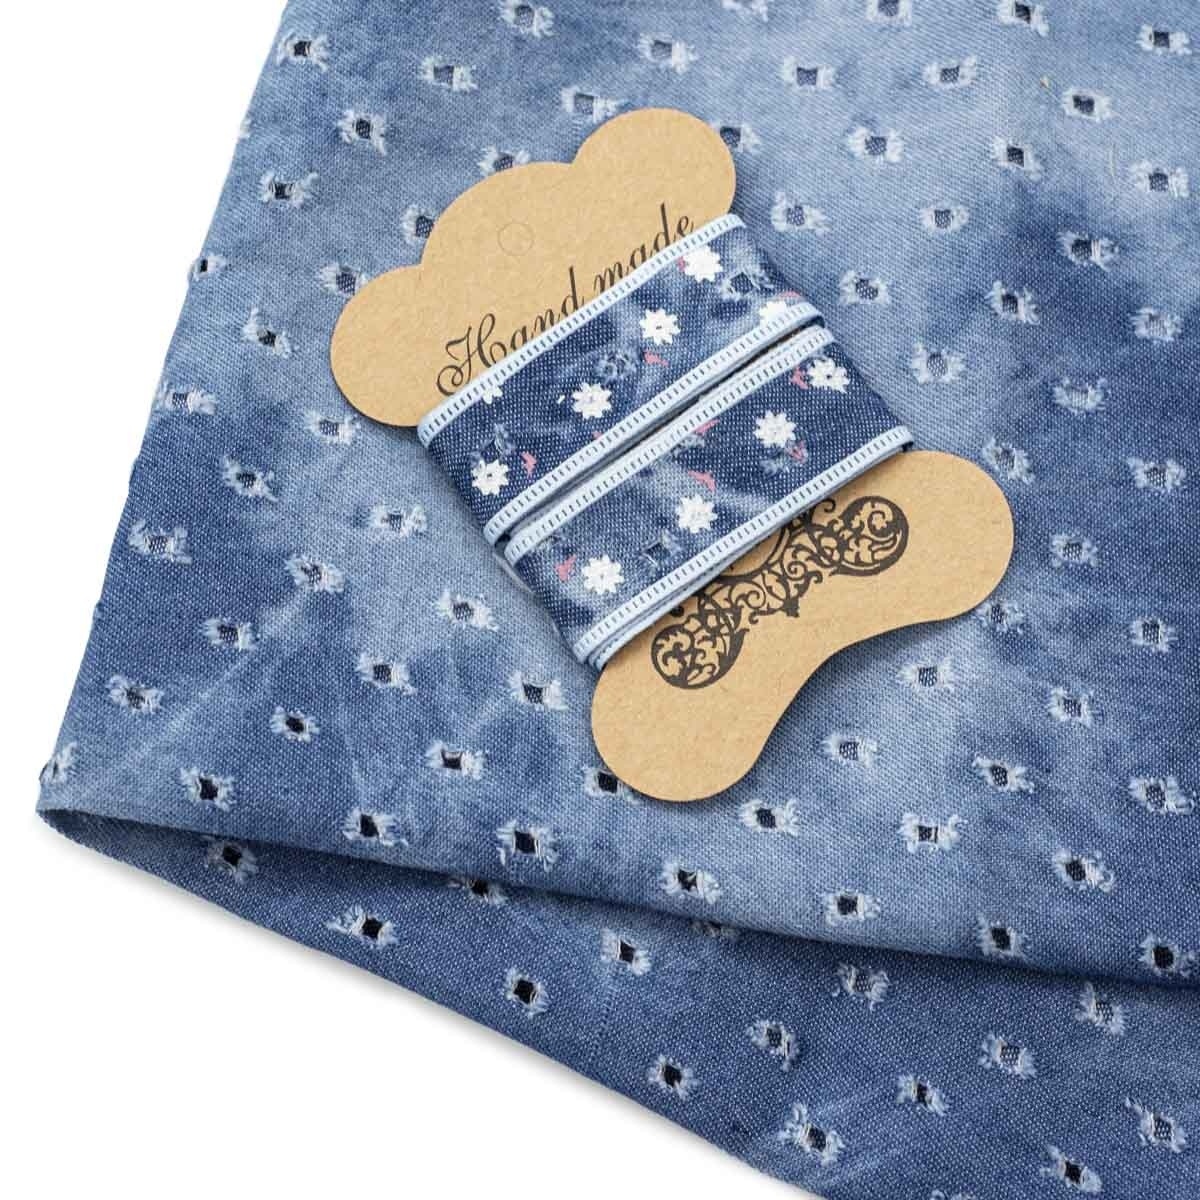 Blue Denim Patchwork Fabric with Braid фото 1